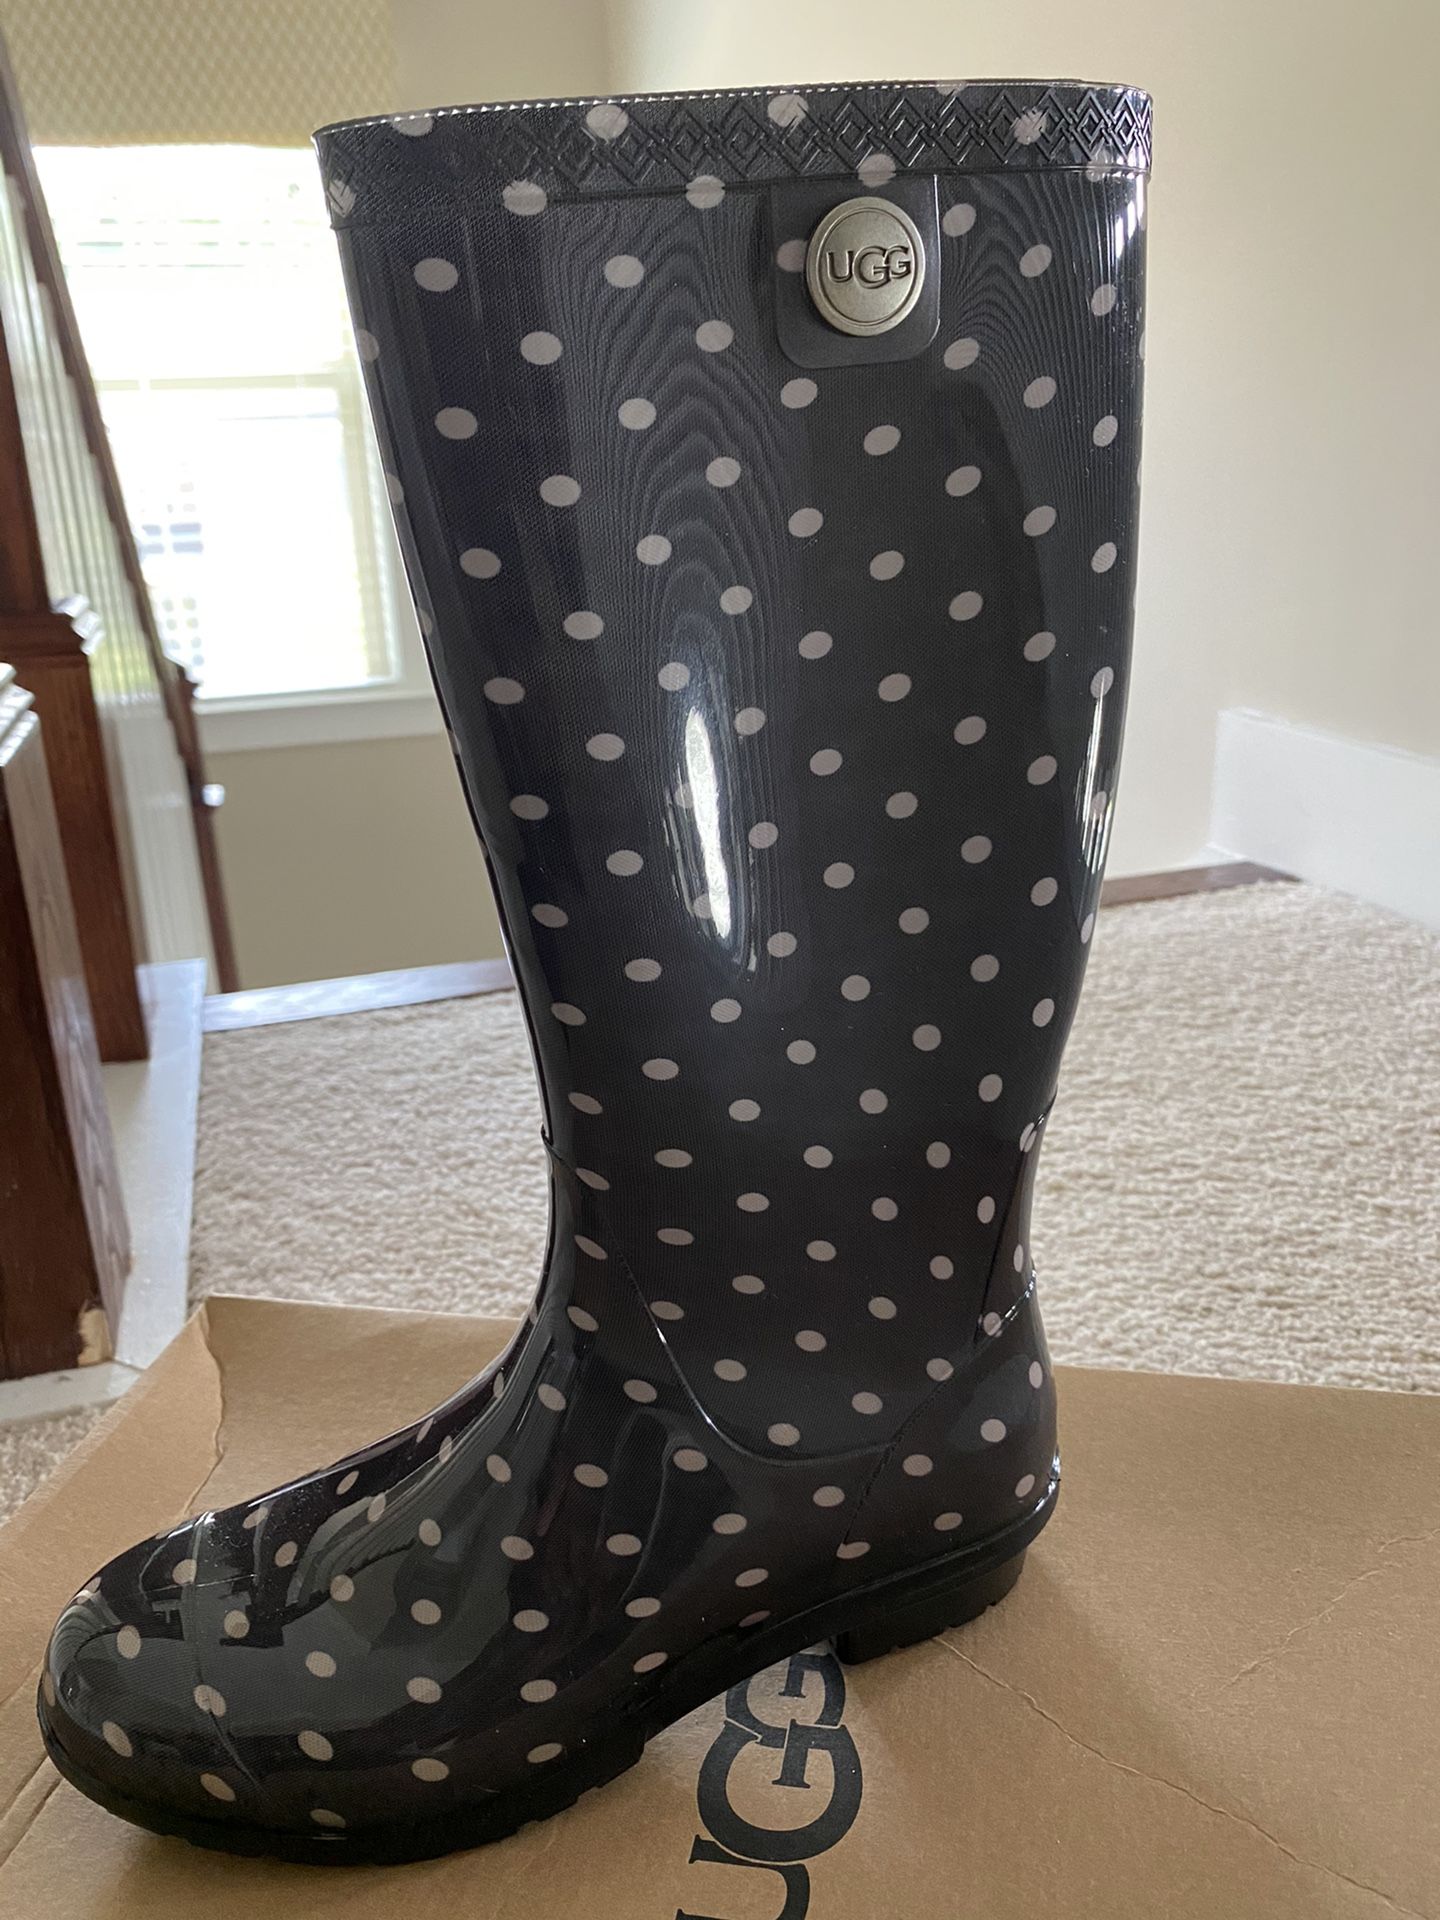 UGG women Rain Boots Polka dots Grey size 6